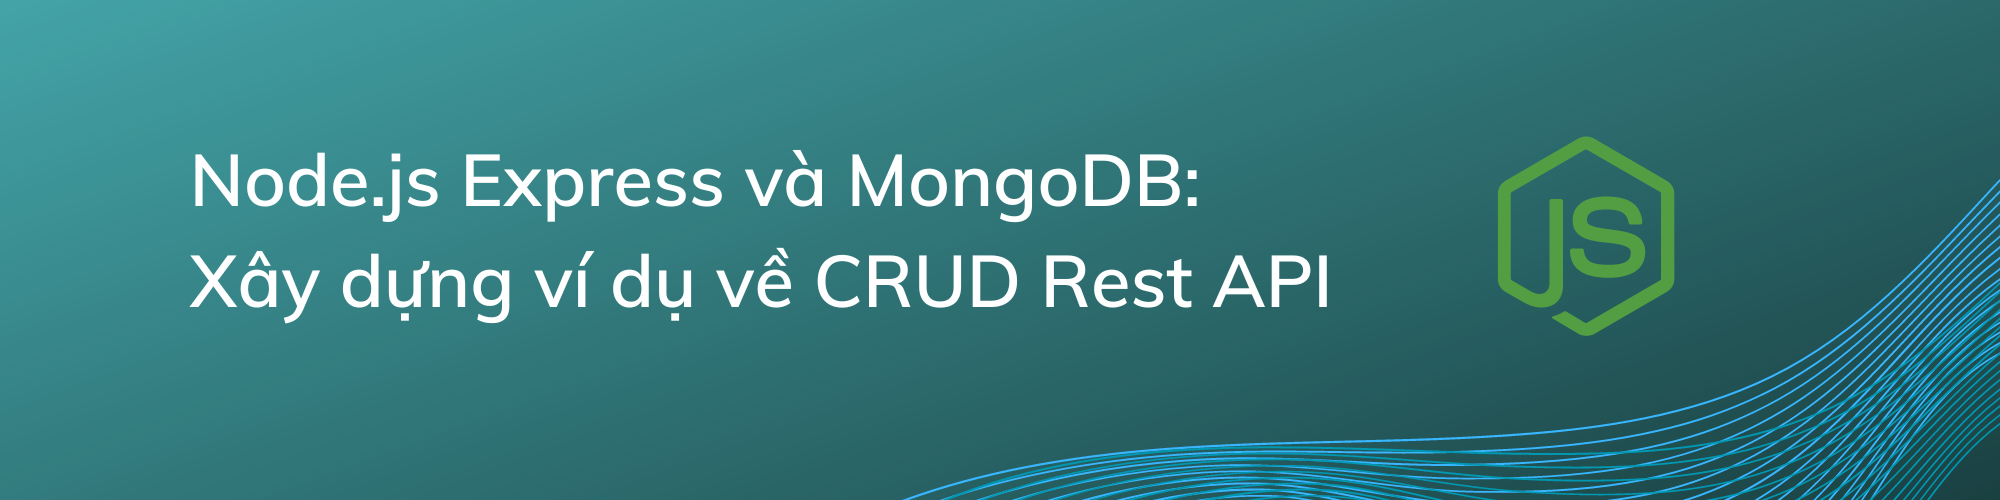 [MERN Stack] - Bài 1: Node.js Express và MongoDB: Xây dựng ví dụ về CRUD Rest API (Backend)